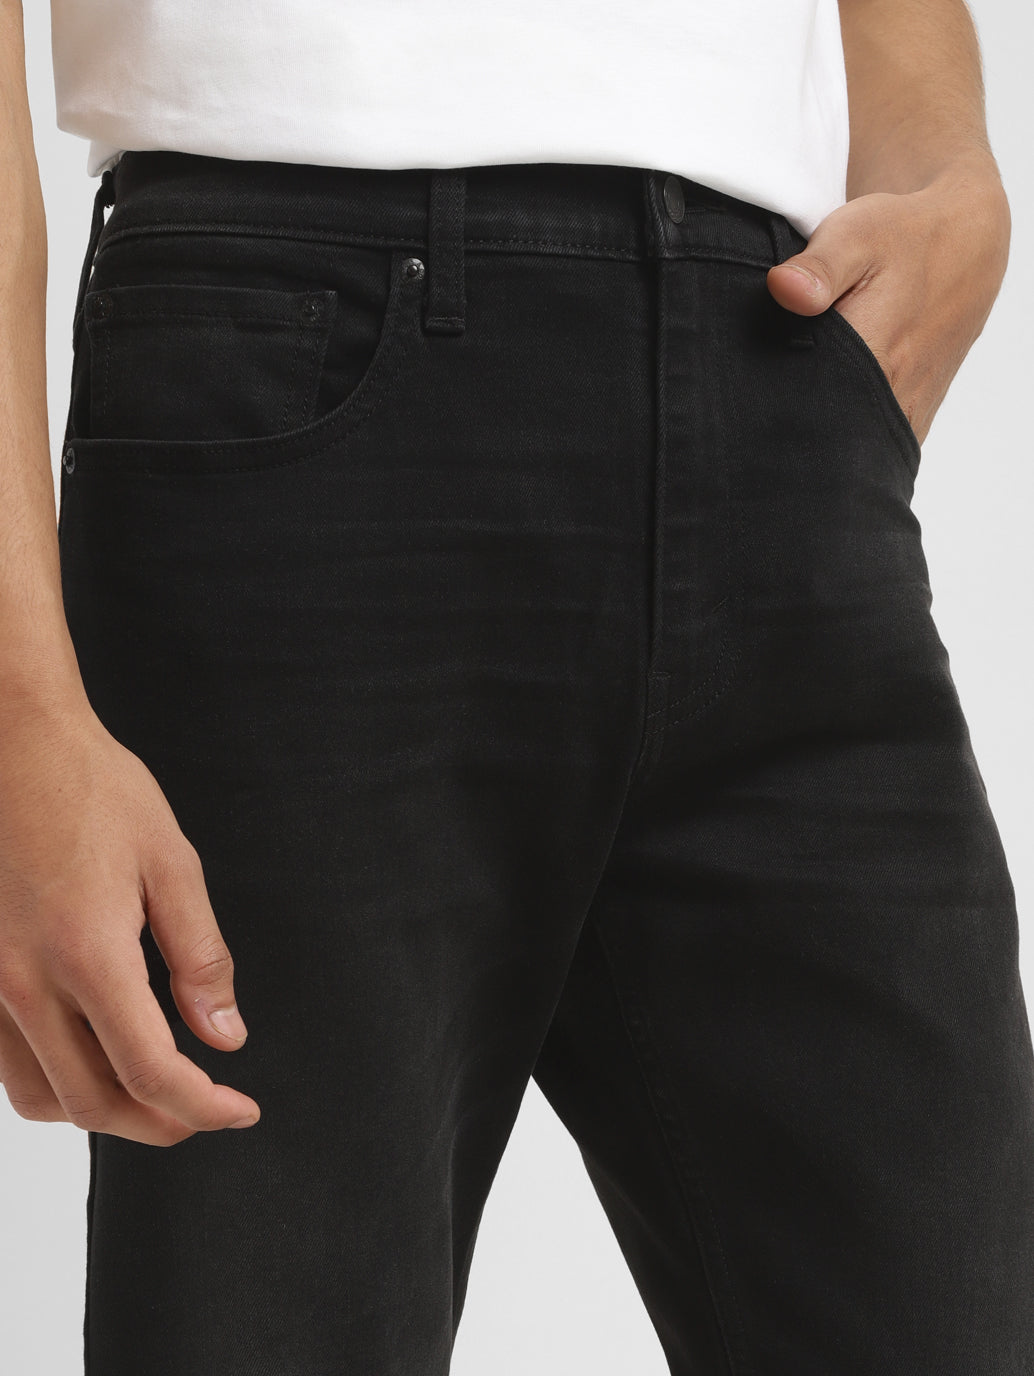 Men's Black Skinny Taper Jeans